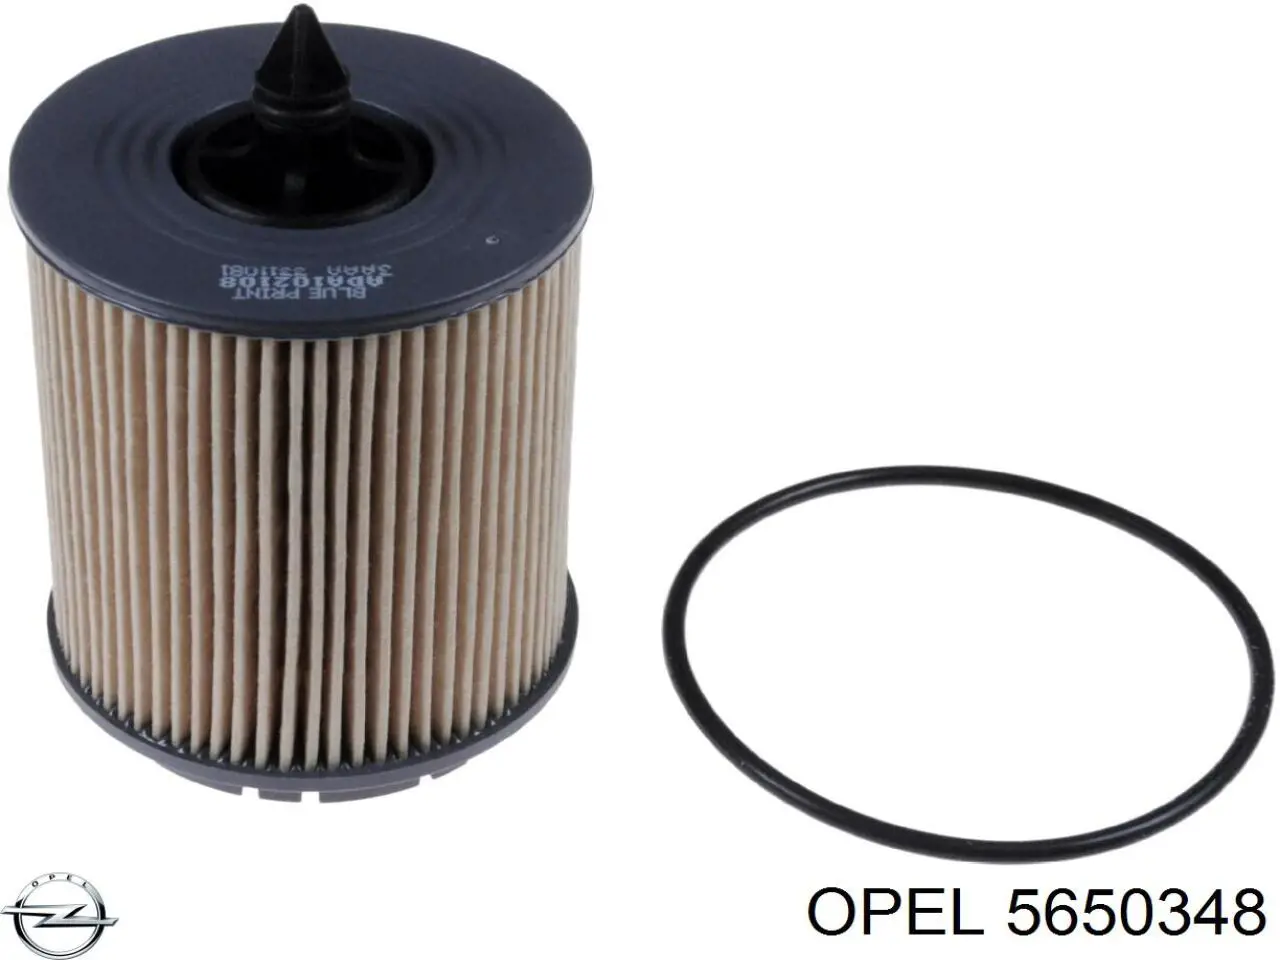 5650348 Opel filtro de aceite